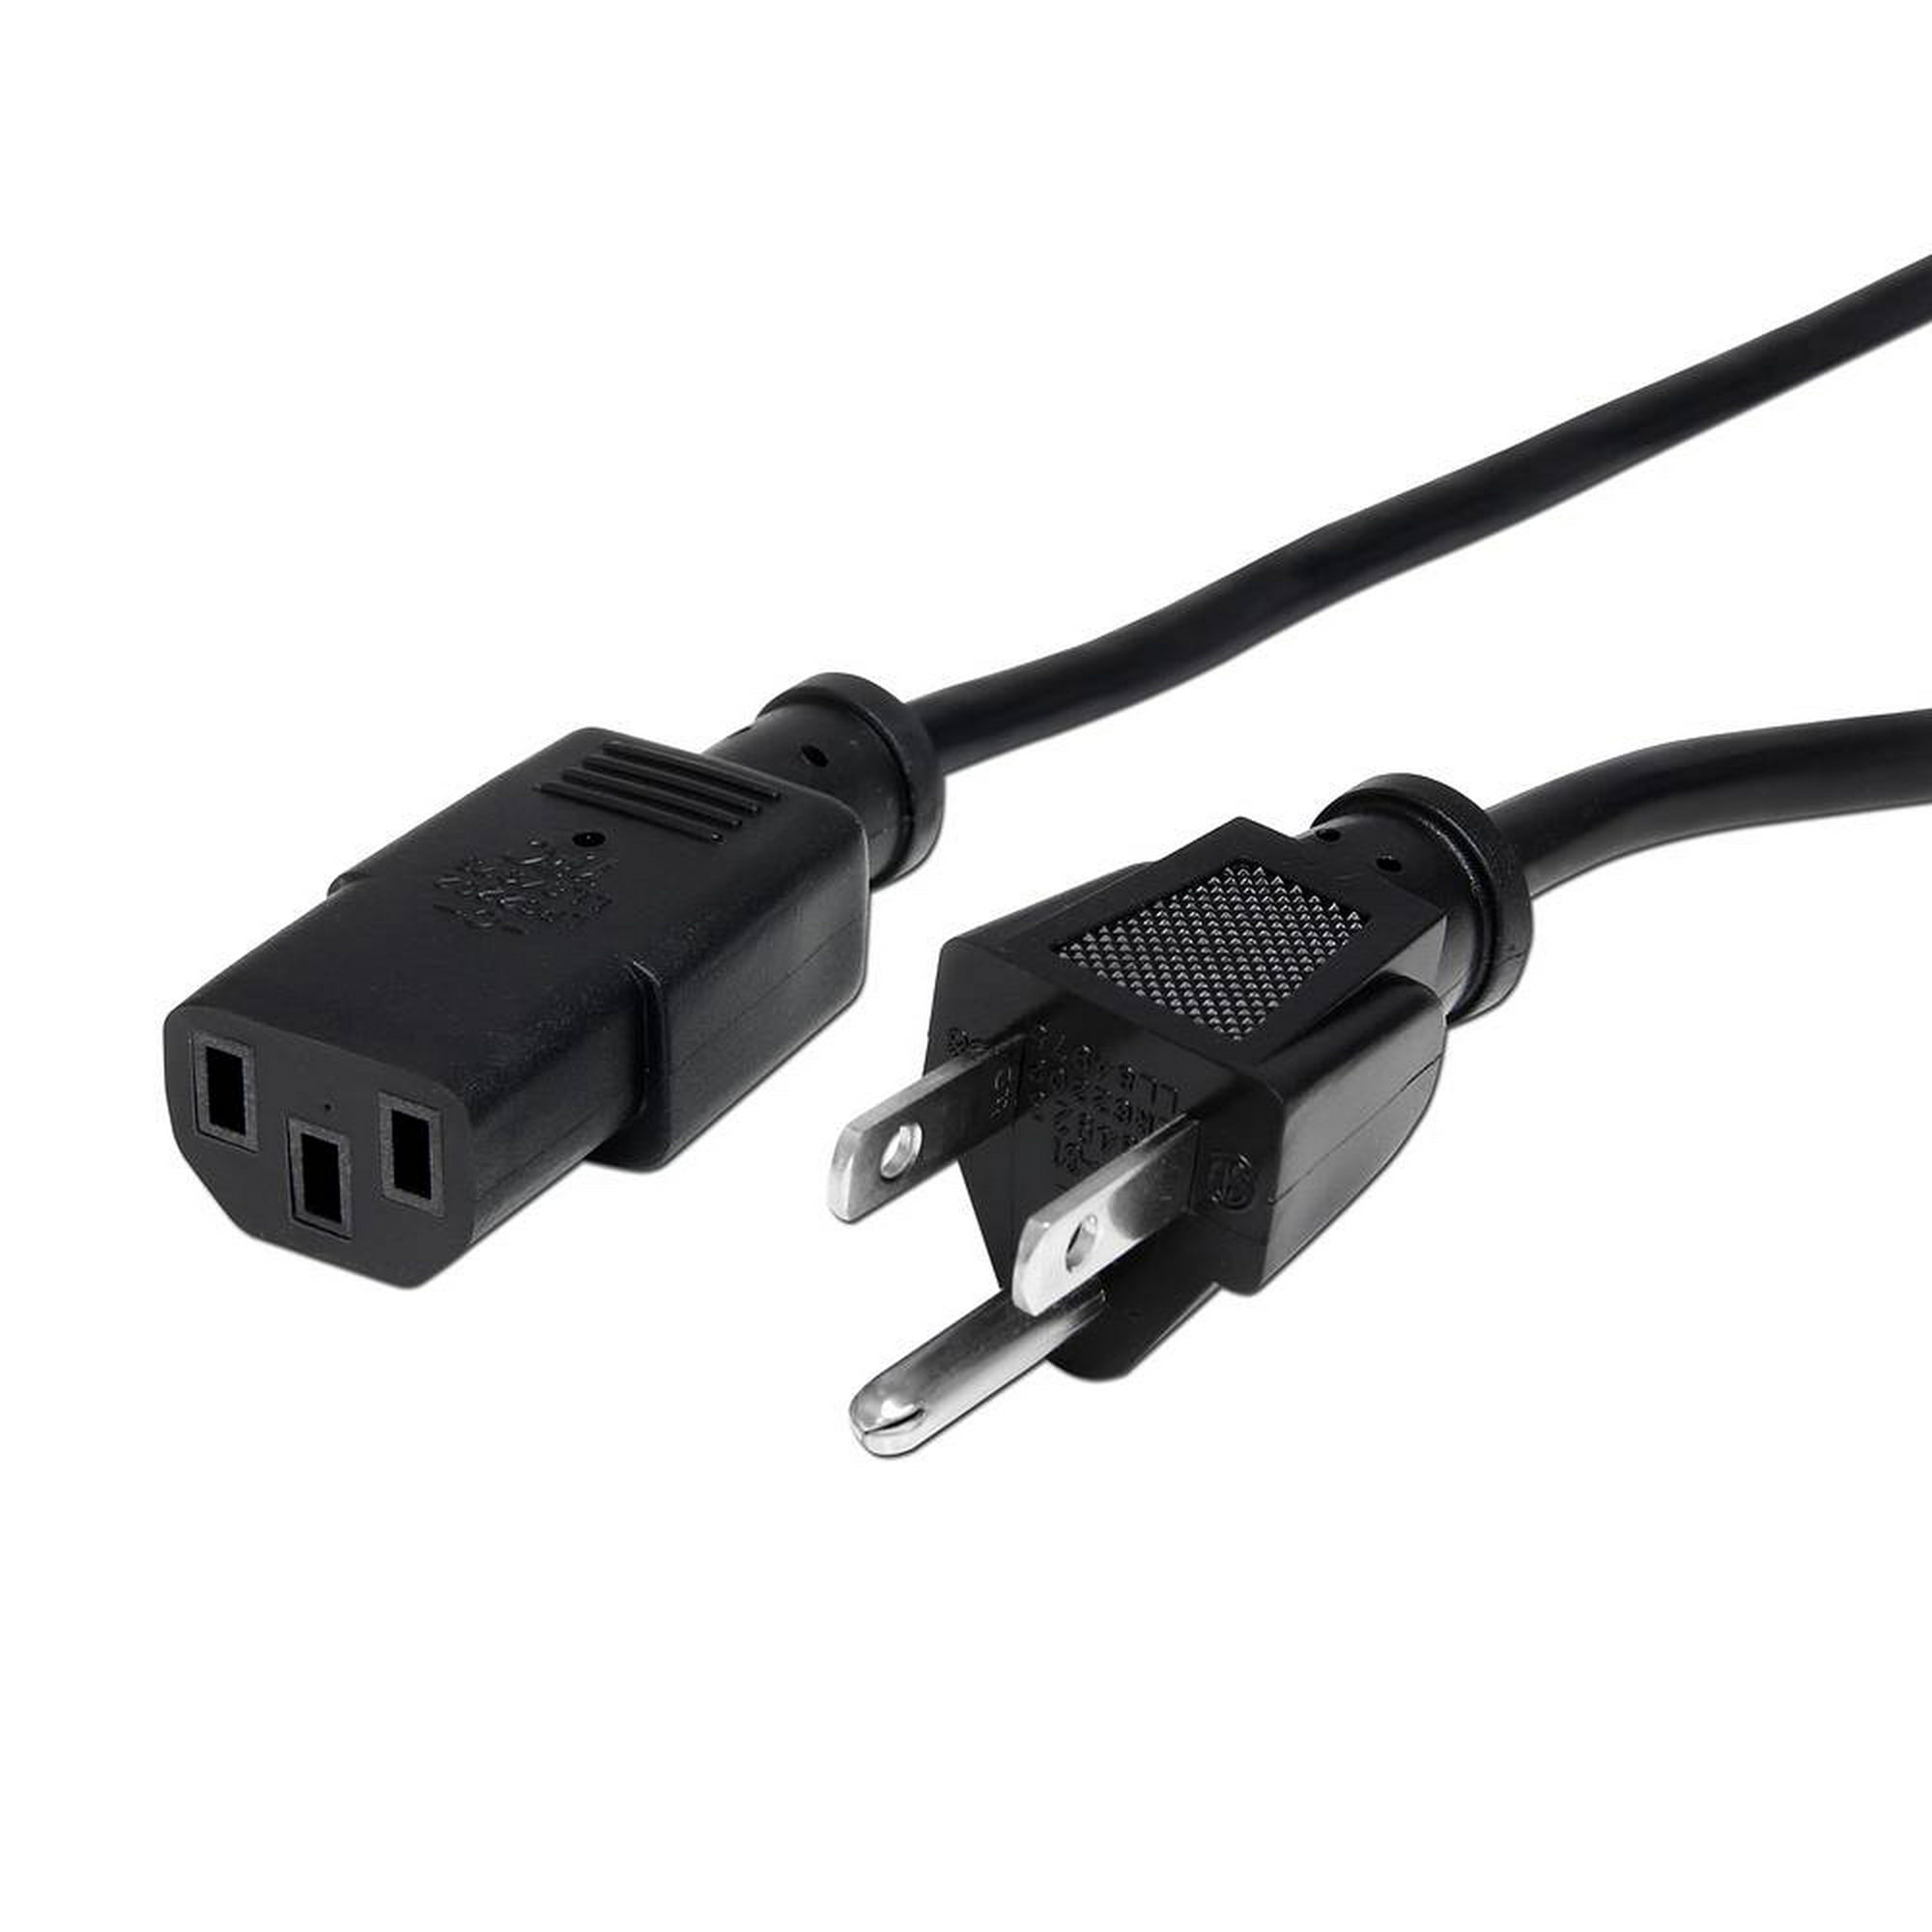  Cable de alimentación estándar completo para PC 3' (5 piezas) :  Electrónica